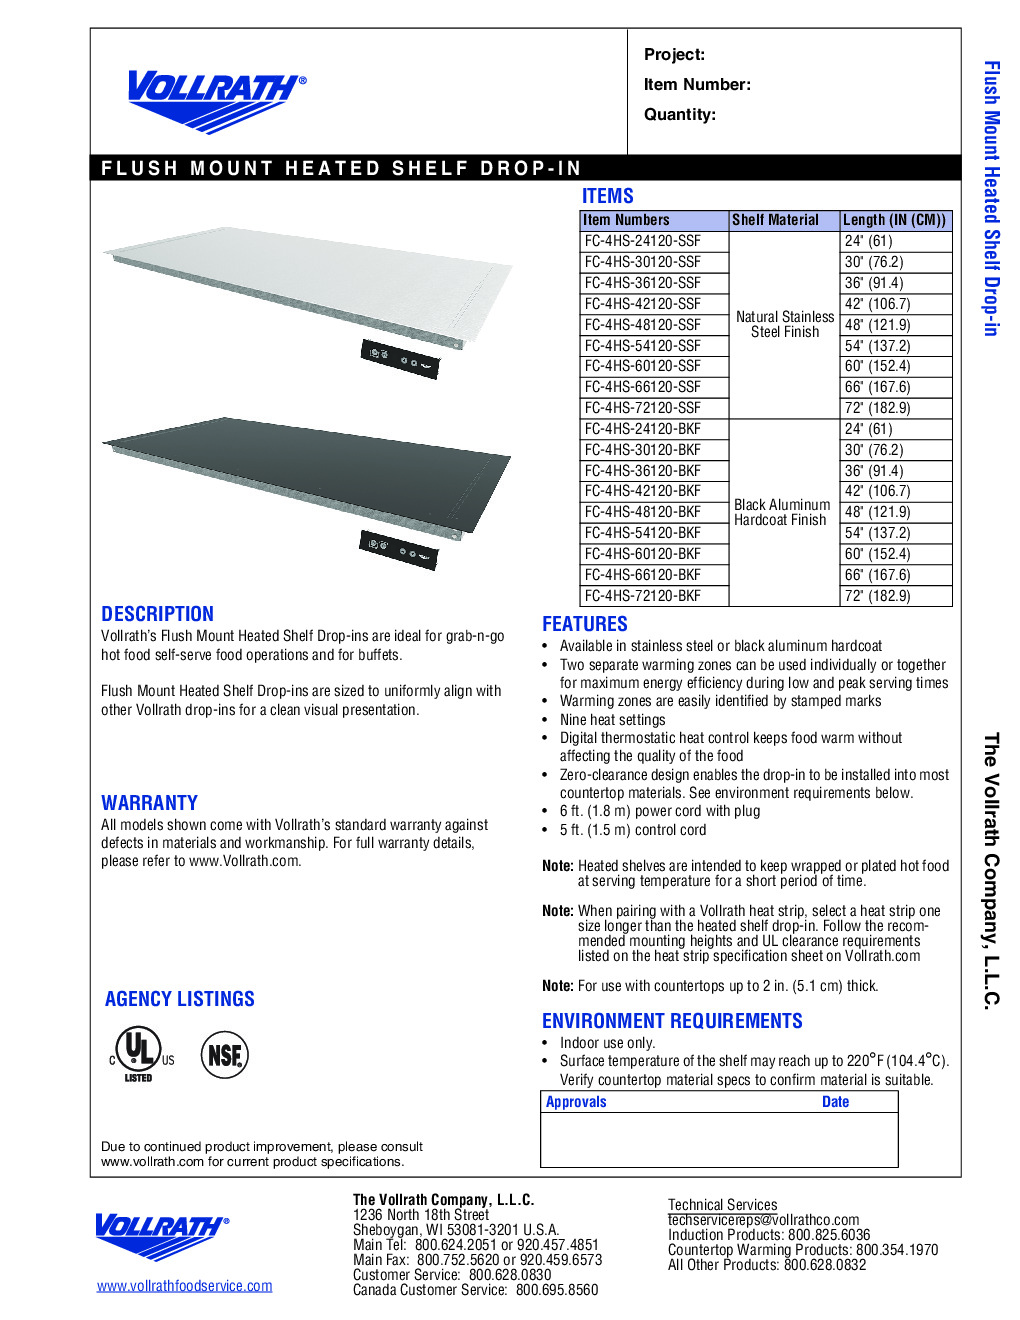 Vollrath FC-4HS-30120-SSF Heated Shelf Food Warmer